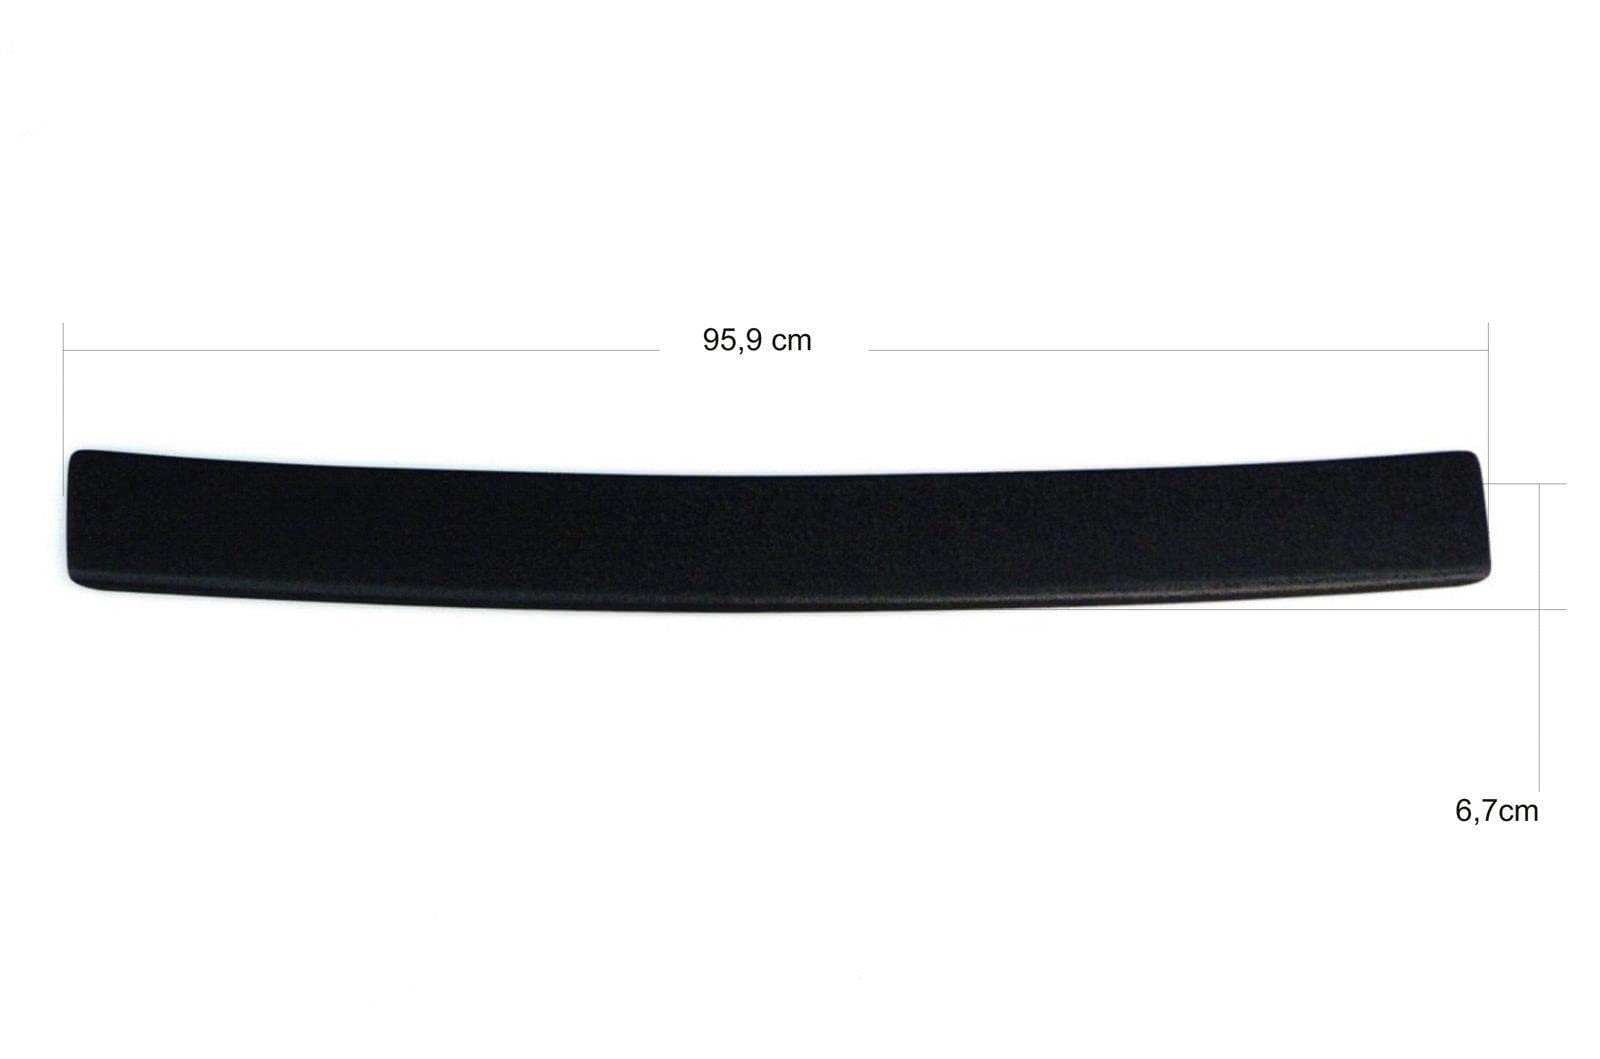 OmniPower® Ladekantenschutz schwarz passend für Mercedes A-Klasse Schrägheck Typ:W176 2012-2018 auch für AMG-Line OmniPower® Ladekantenschutz Farbe: schwarz von OmniPower